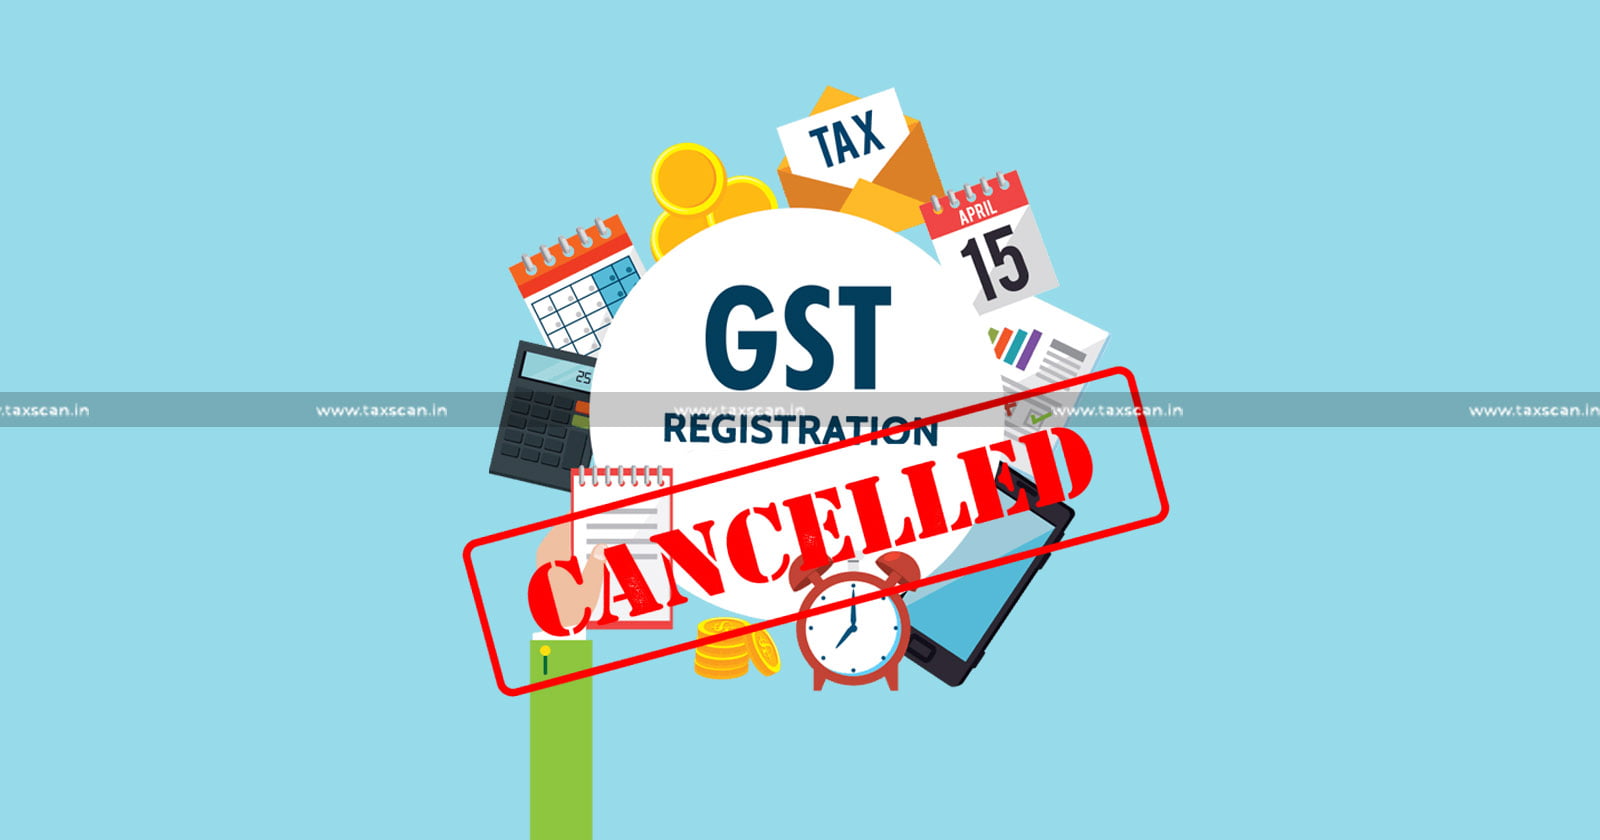 Retrospectively Canceled GST registration - Delhi HC - Canceled Registration - Show Cause Notice - taxscn